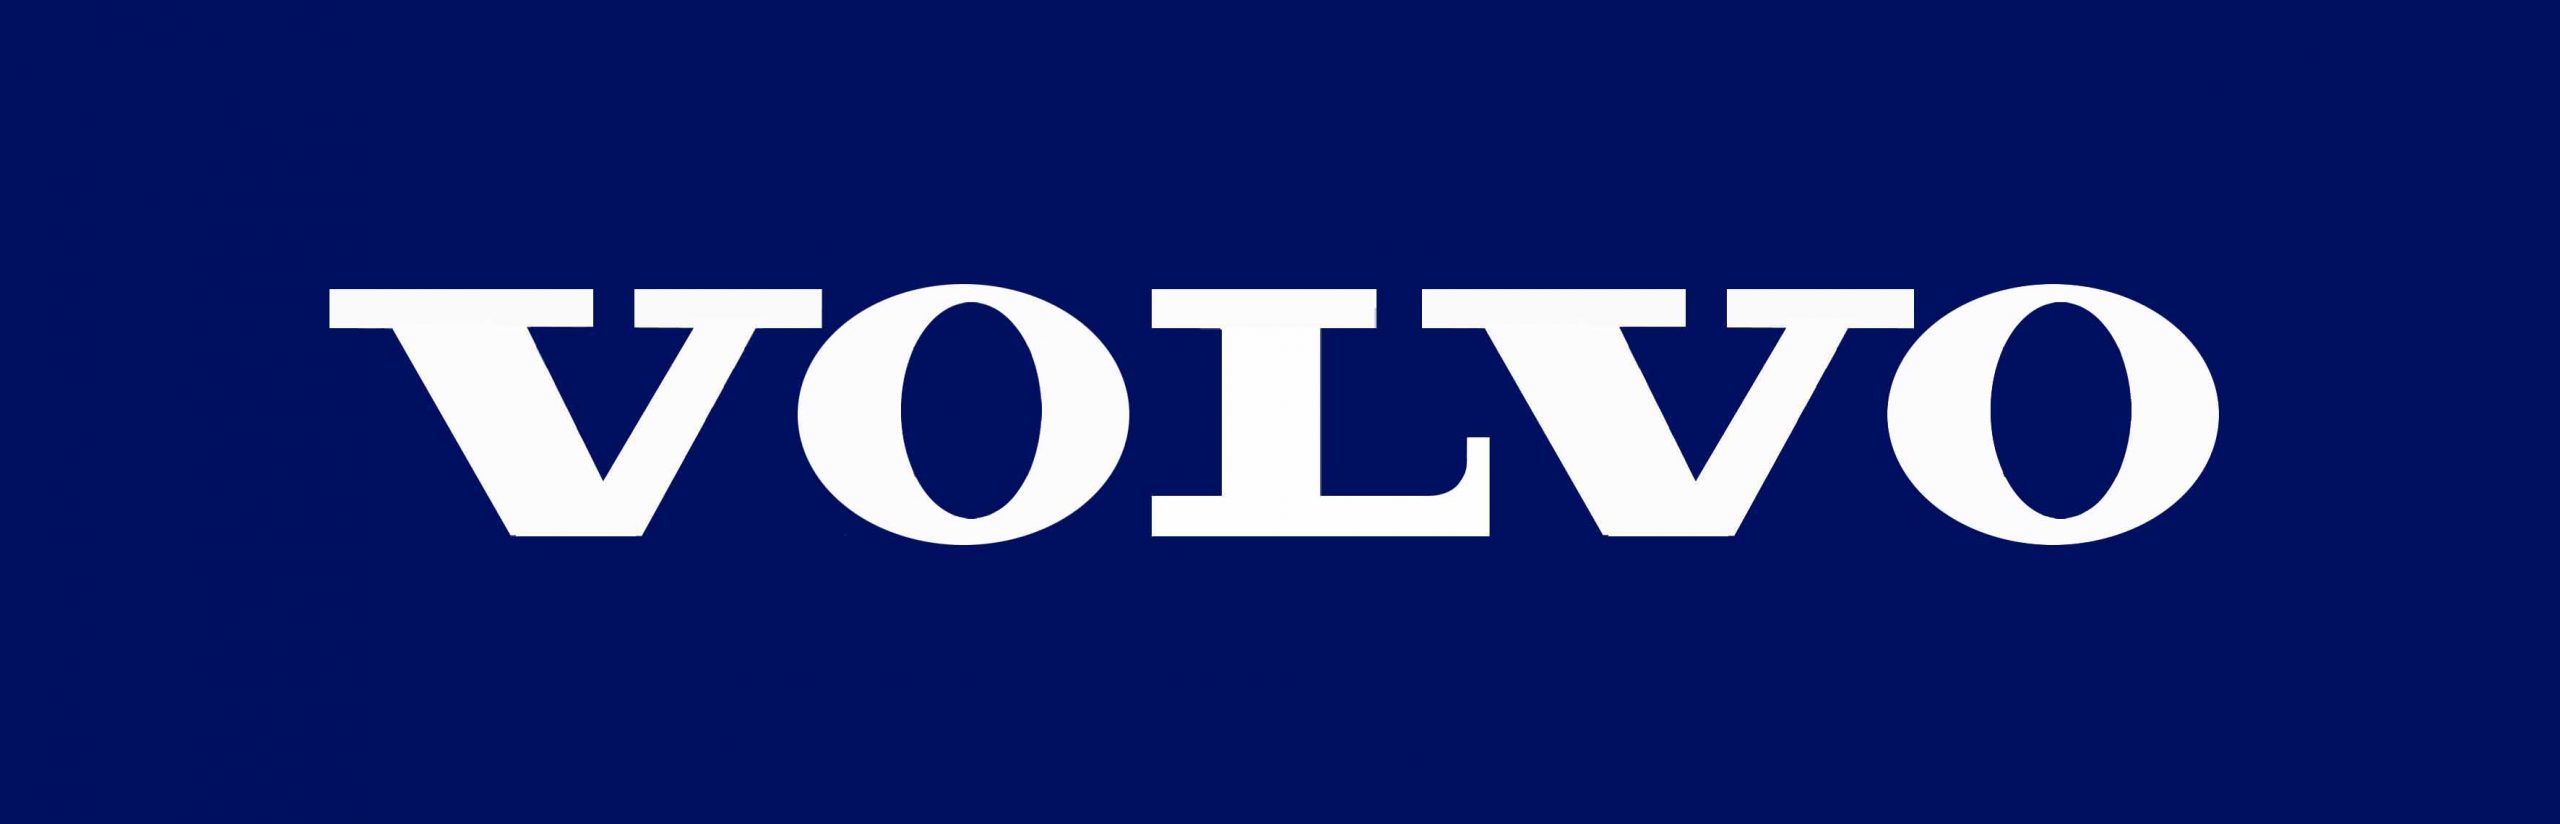 Volvo logo | Dawsondirect